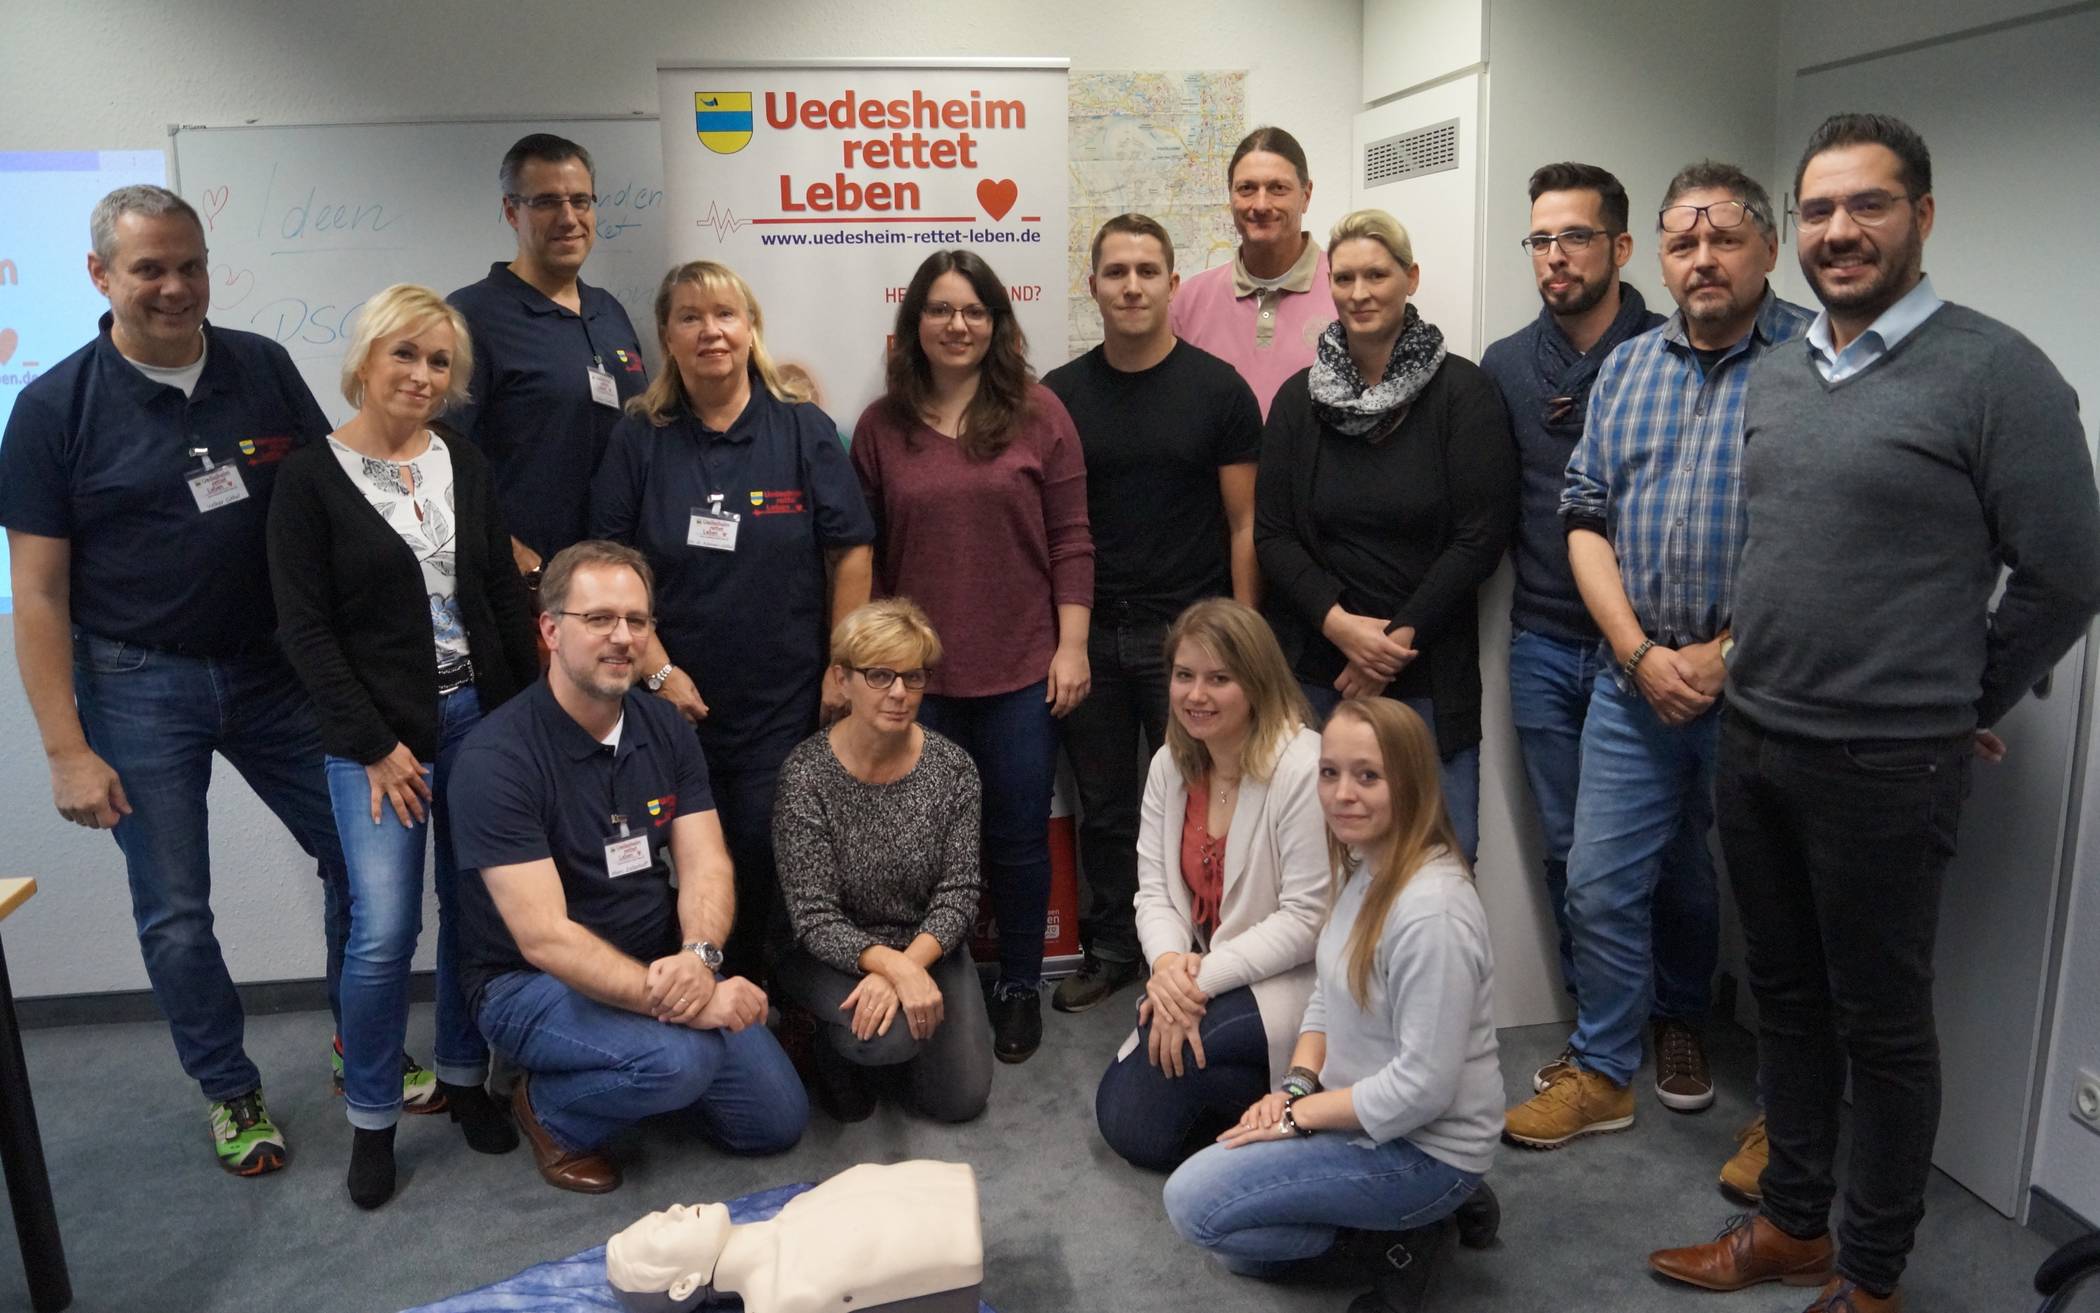 Das ehrenamtliche Team von „Uedesheim rettet